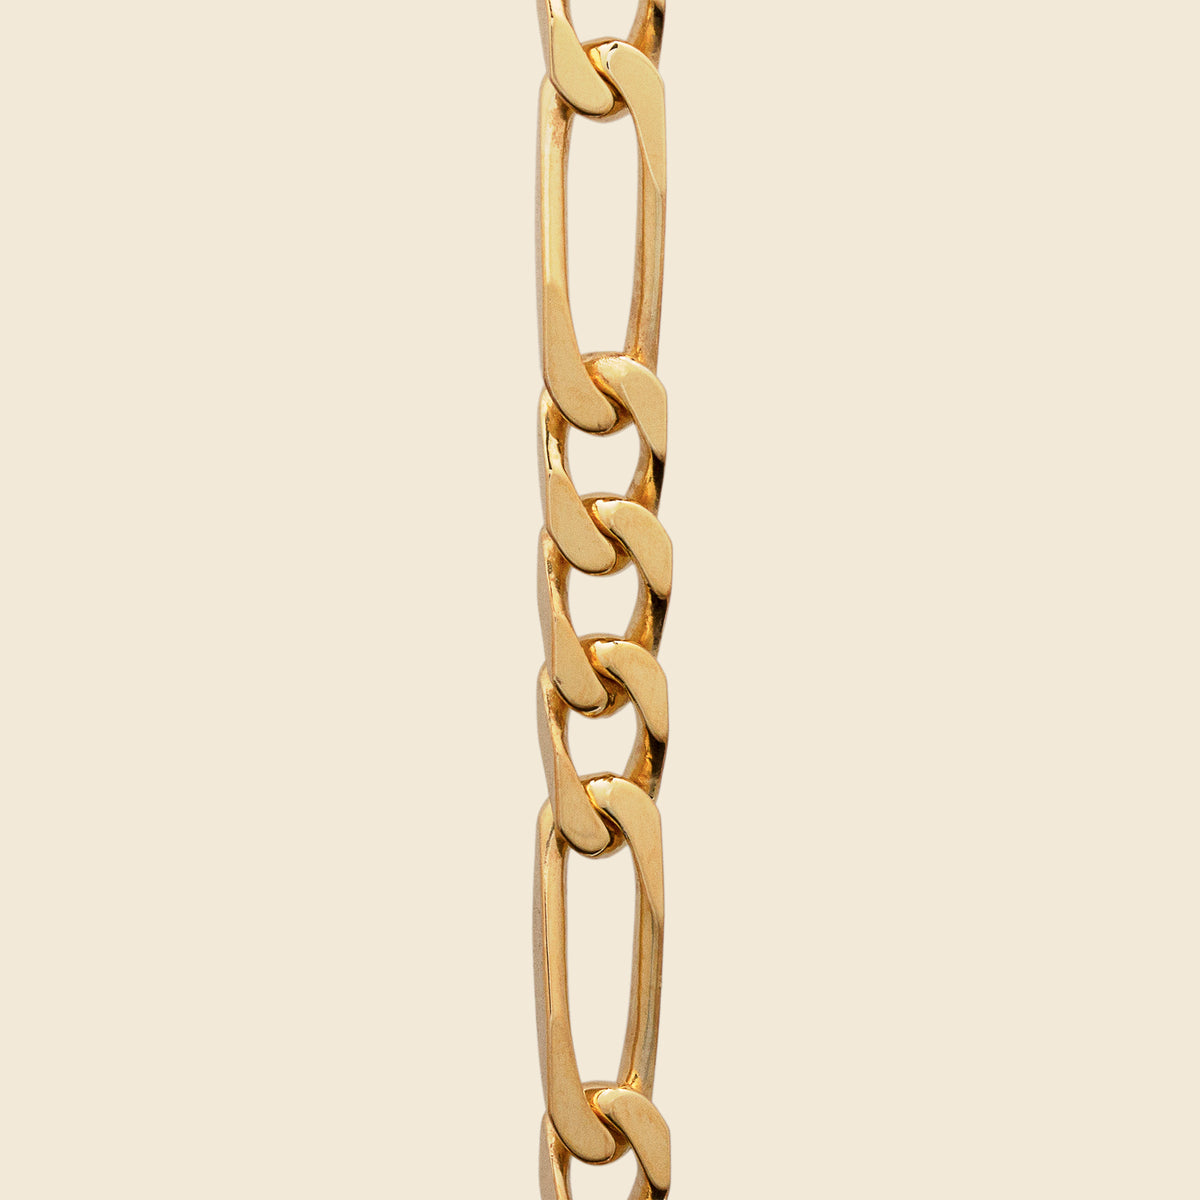 Khloe Jewels Seville Figaro Bracelet / Anklet 5mm Gold